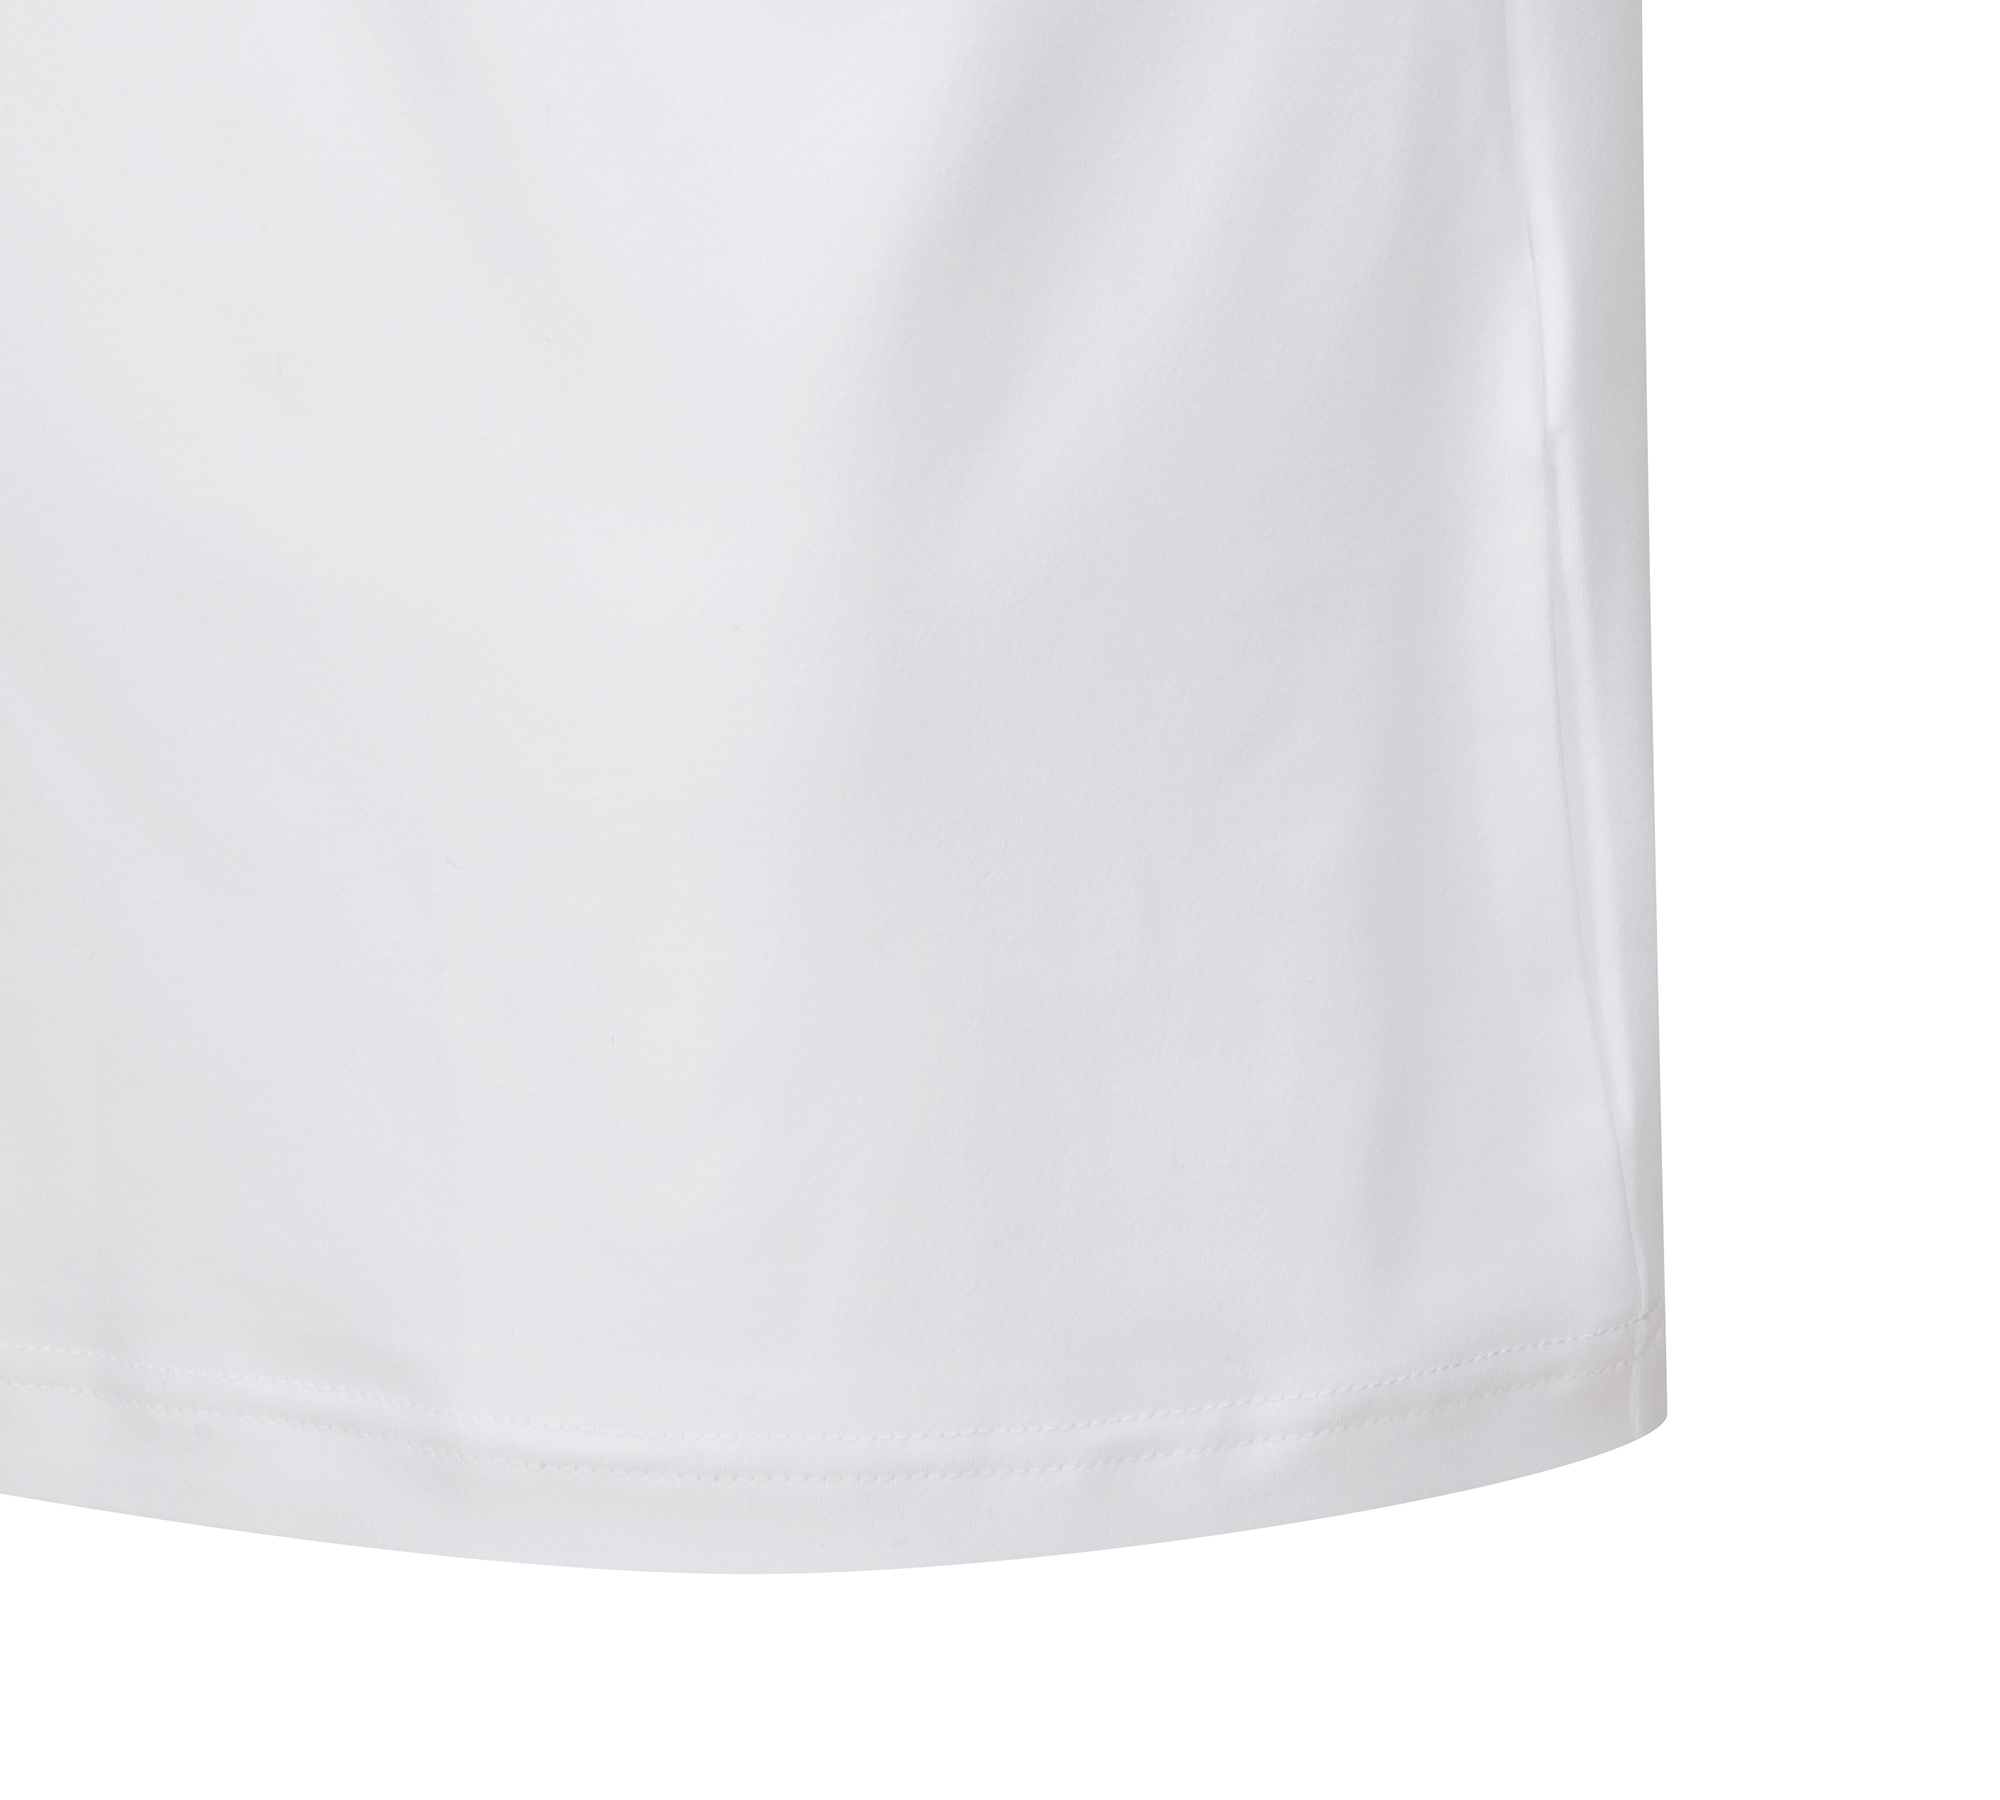 FG 가을 남성 티셔츠 로고포인트 베이스 레이어_52KA2502, 화이트